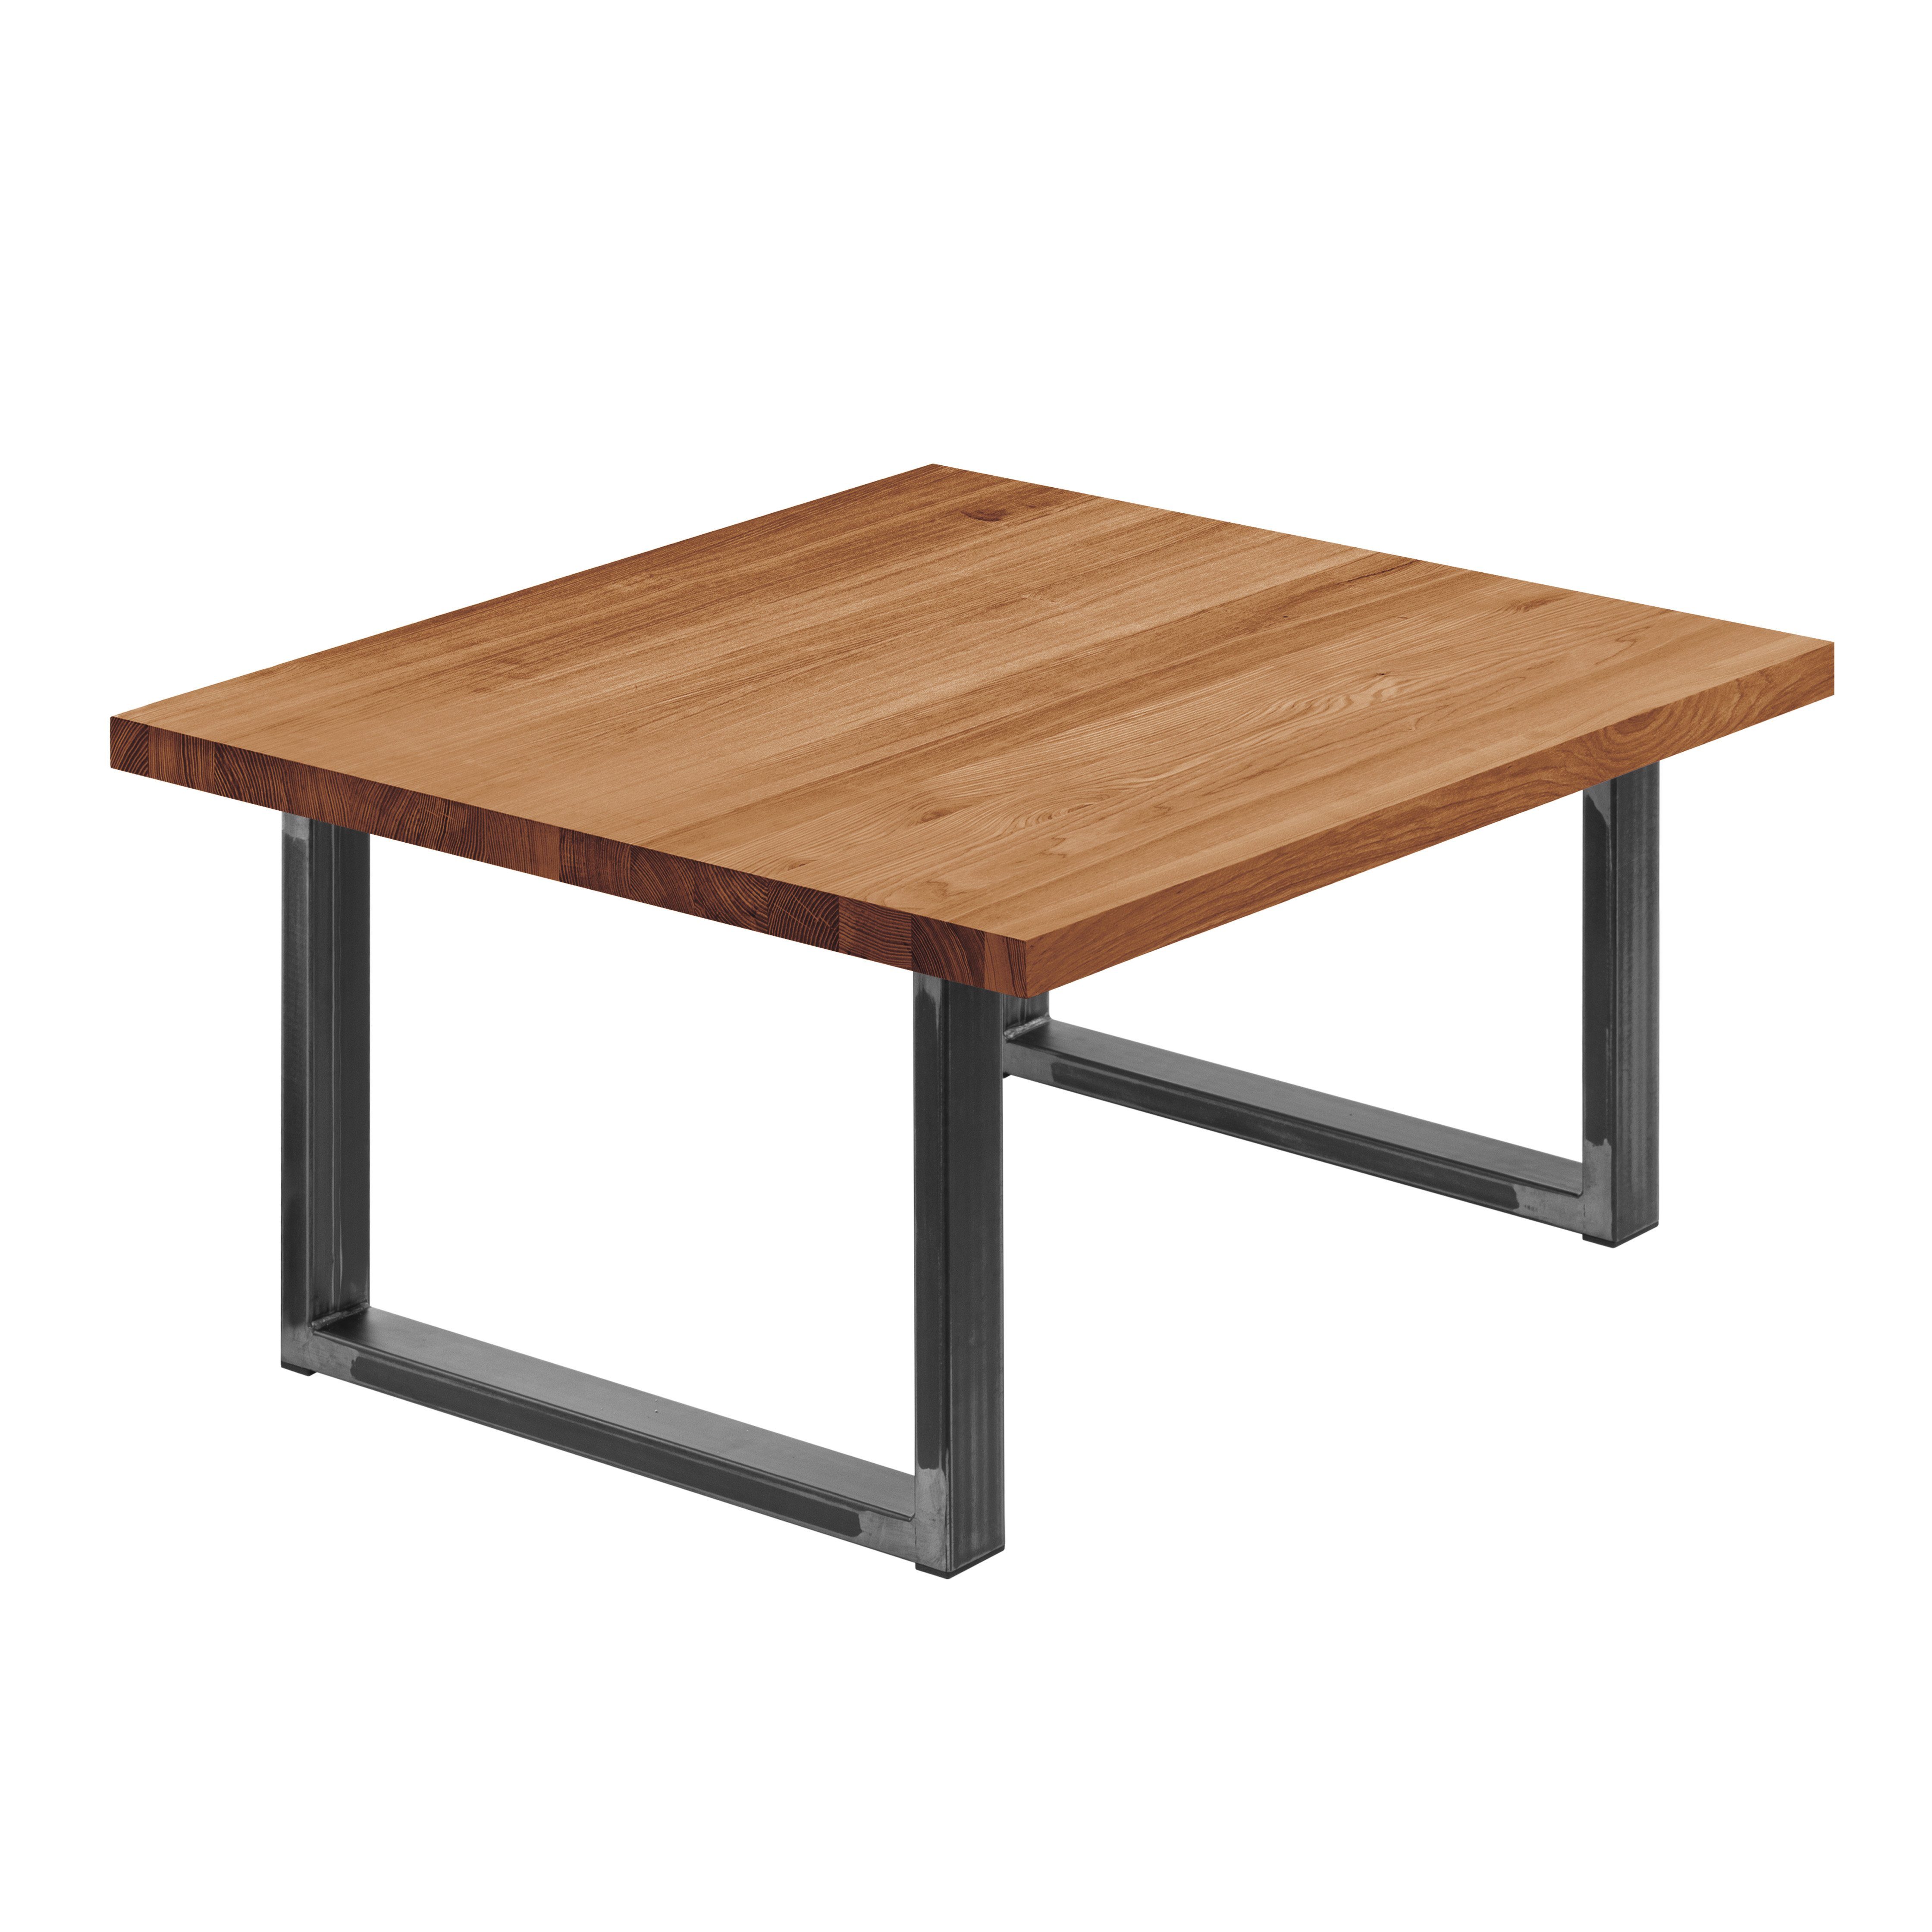 LAMO Manufaktur Esstisch Loft Küchentisch Tischplatte gerade Klarlack Massivholz | Tisch), Kante inkl. (1 mit Metallgestell Rohstahl Dunkel